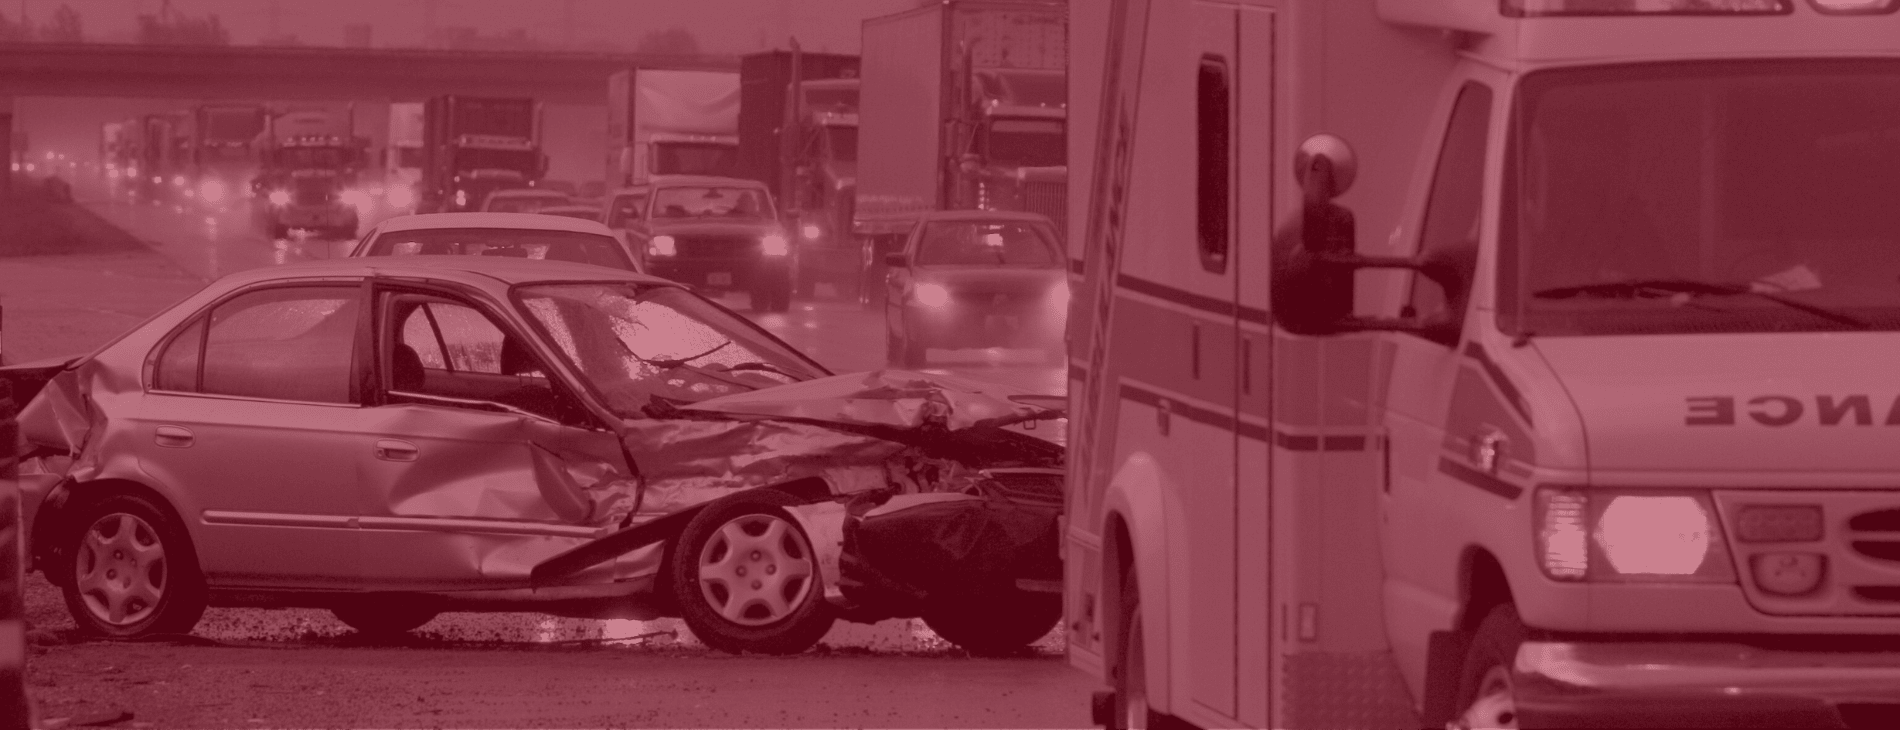 Raseda multi-vehicle crash